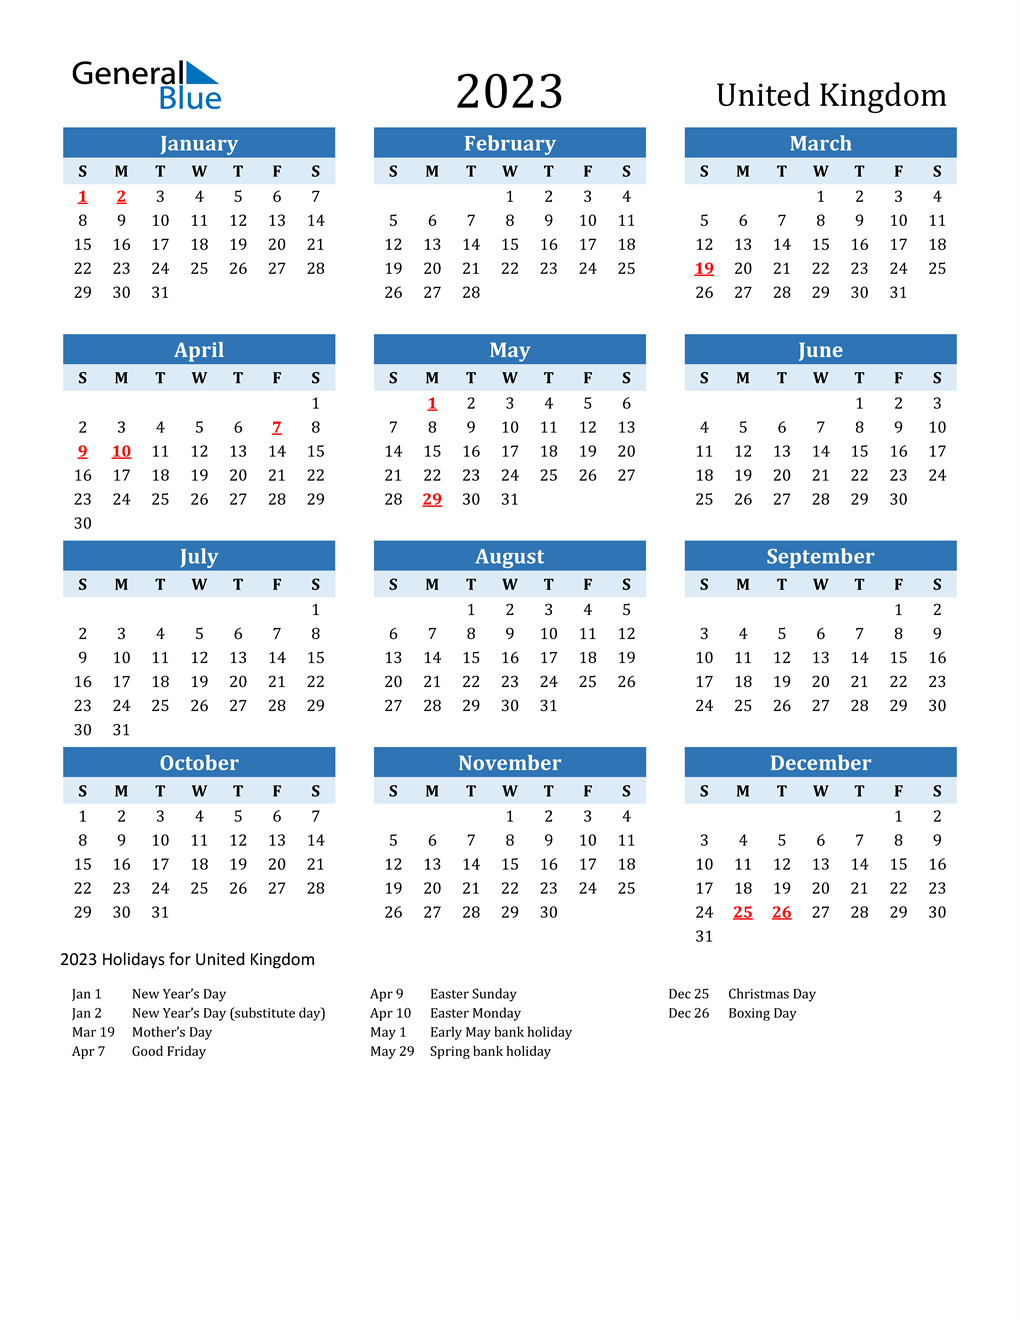 events-in-the-uk-calendar-2023-printable-april-2023-calendar-pelajaran